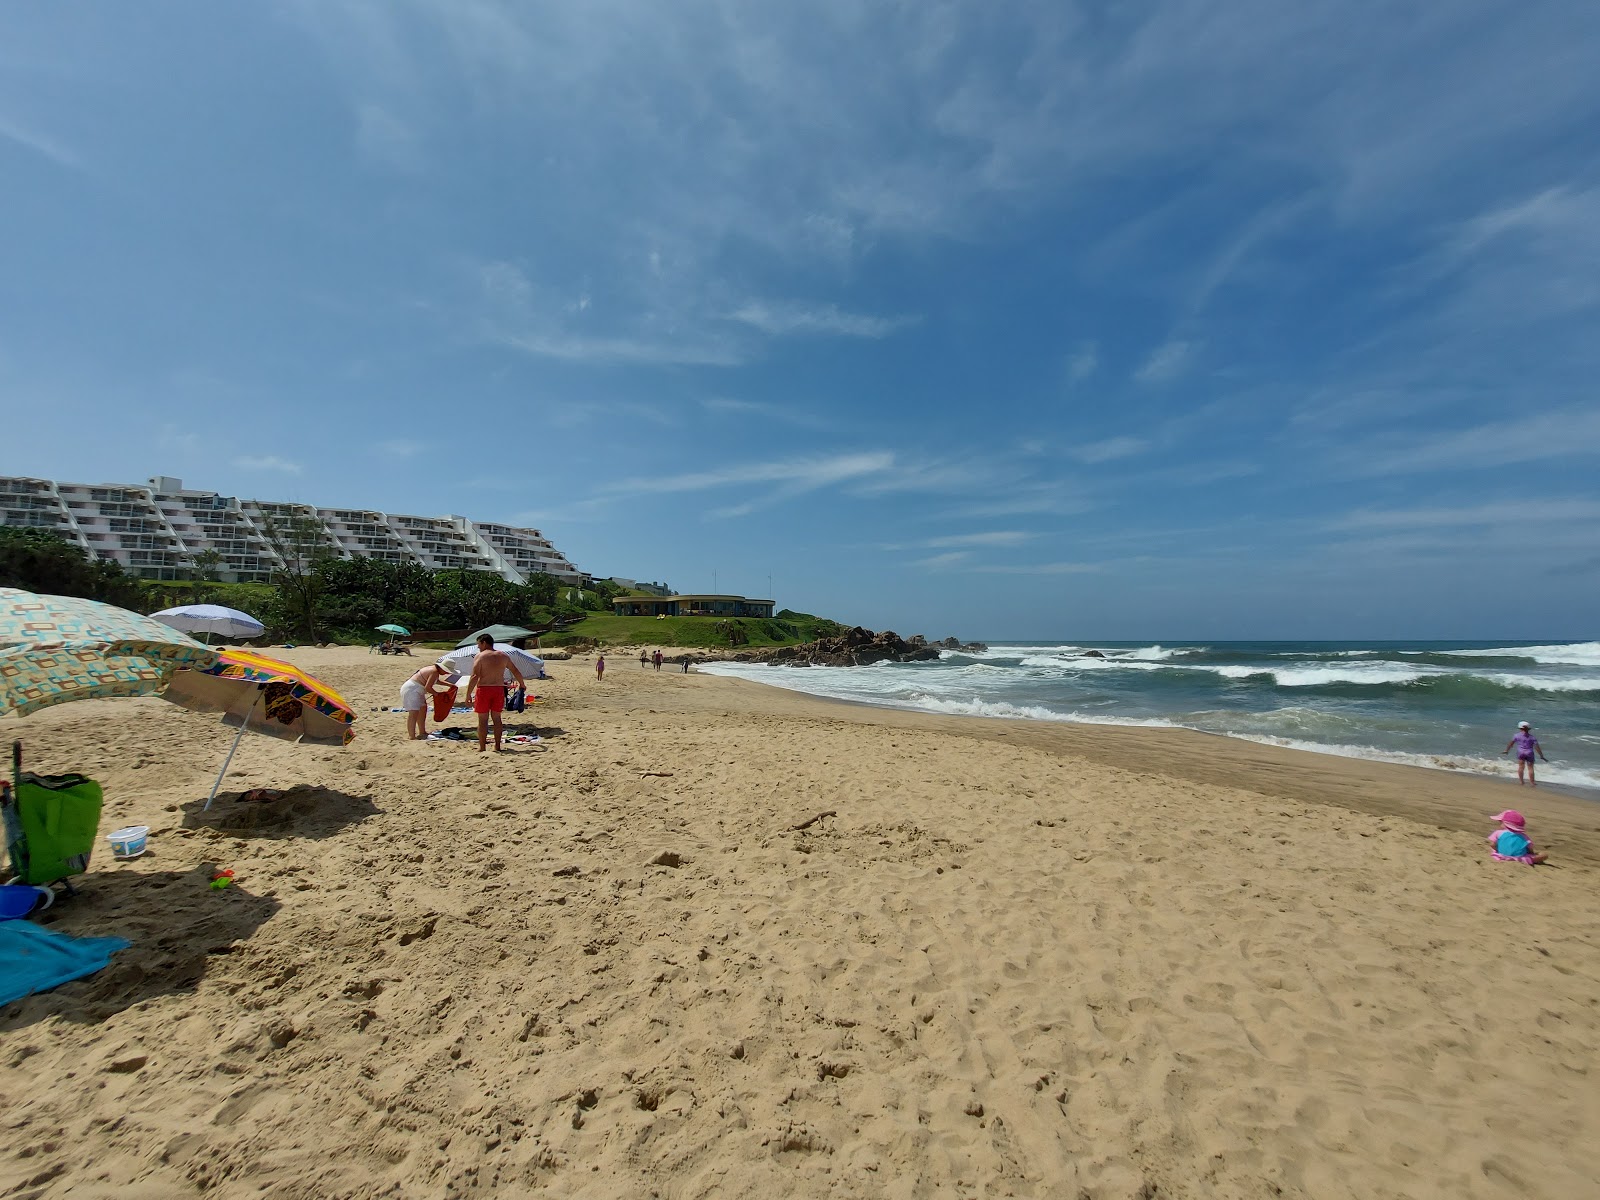 Fotografie cu Margate beach cu o suprafață de nisip fin strălucitor